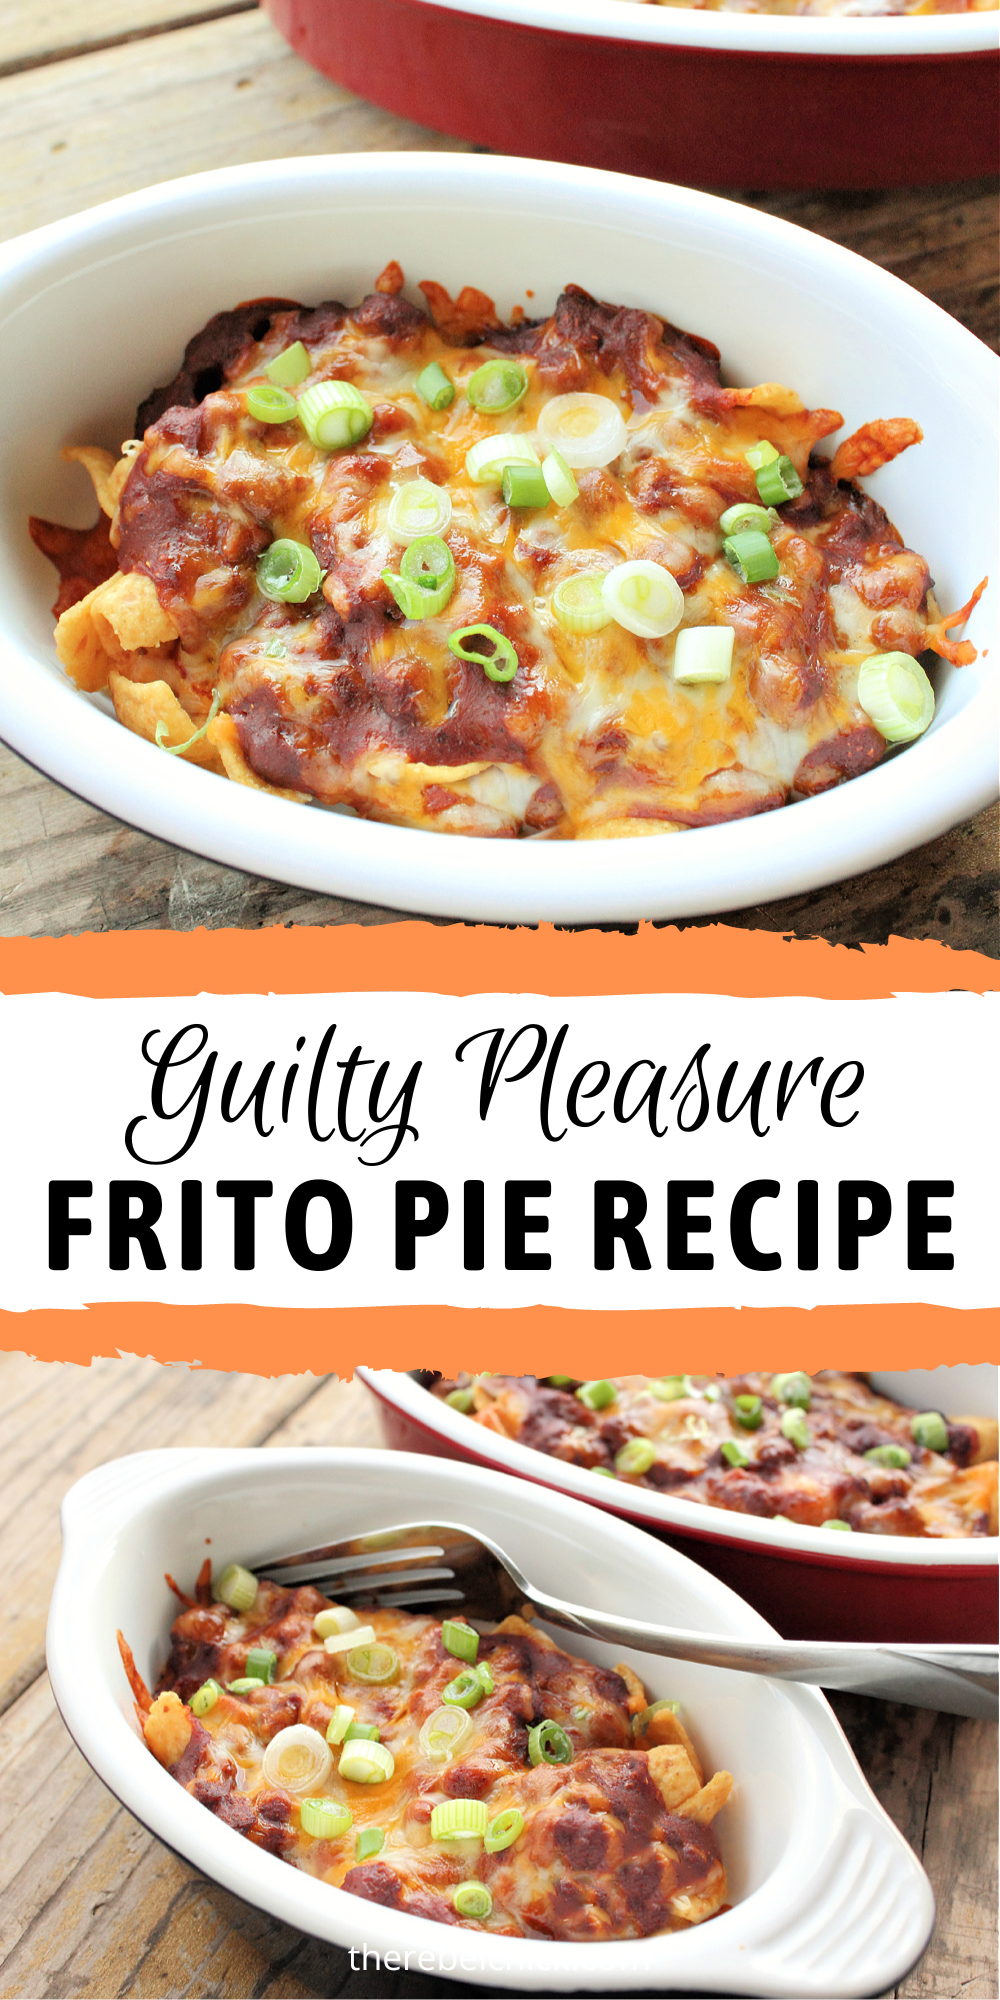 Guilty Pleasure Frito Pie Recipe